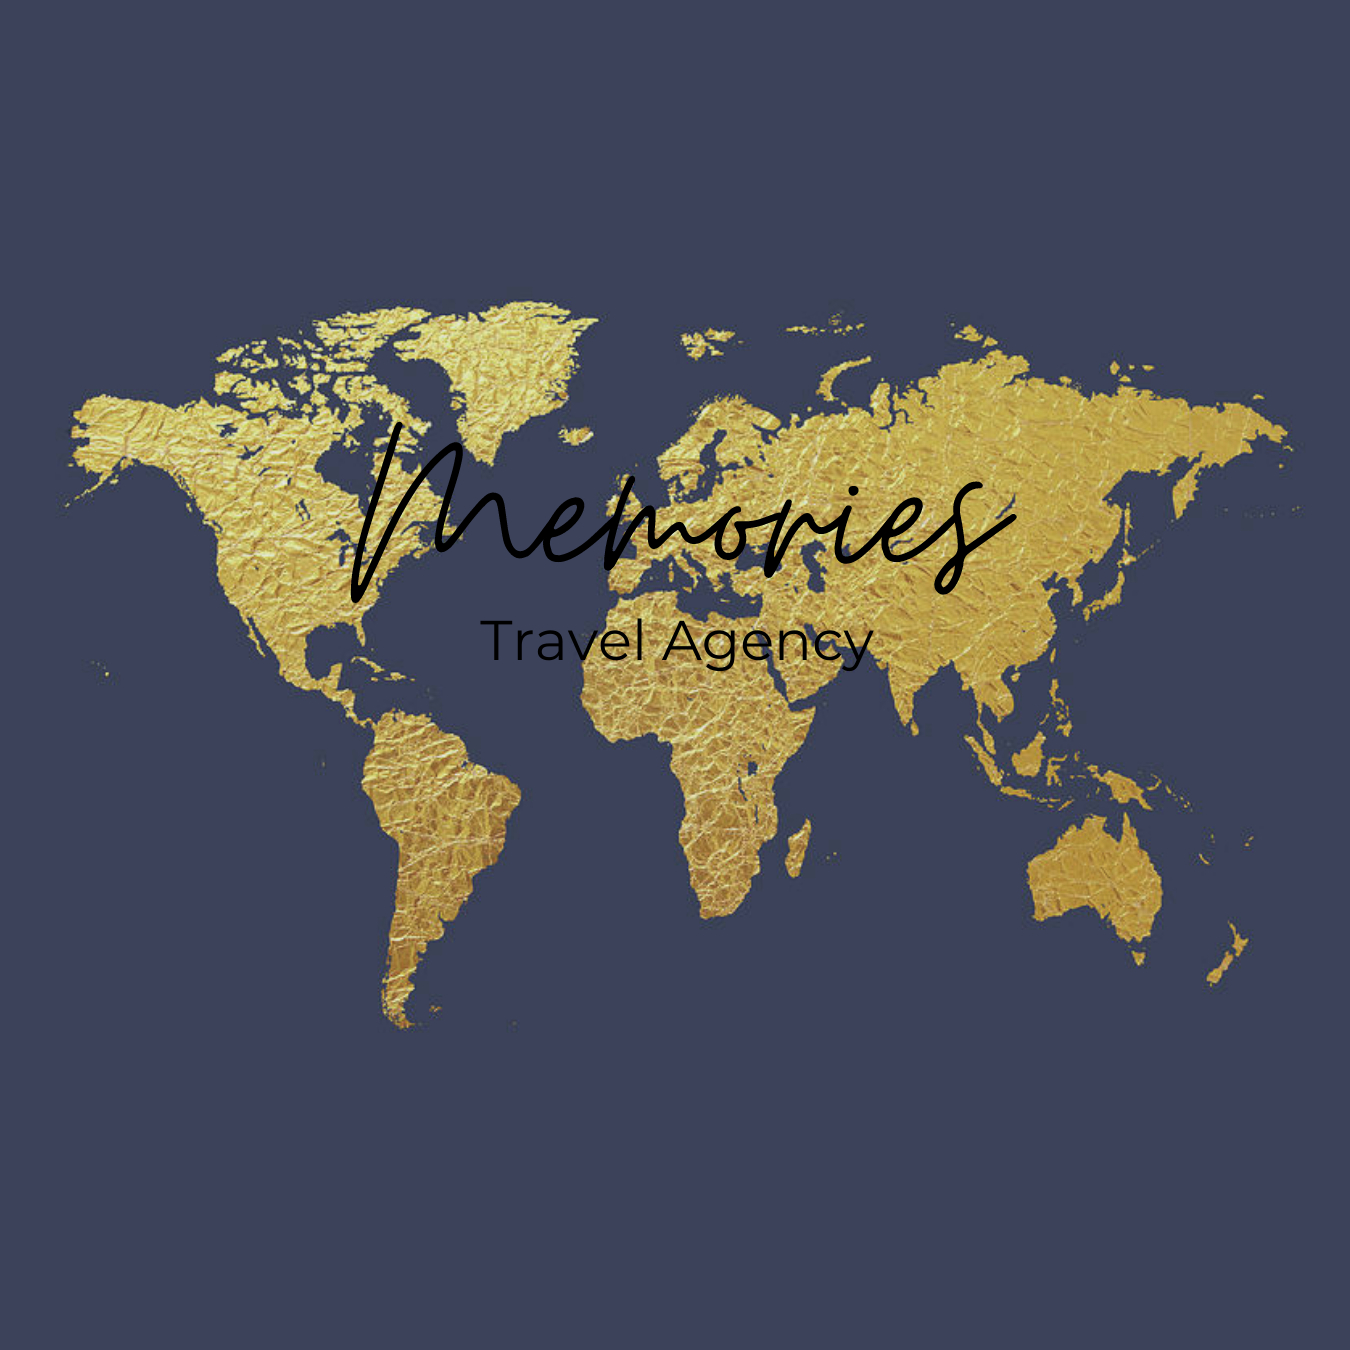 Agencia de viajes Memories Travel Agency